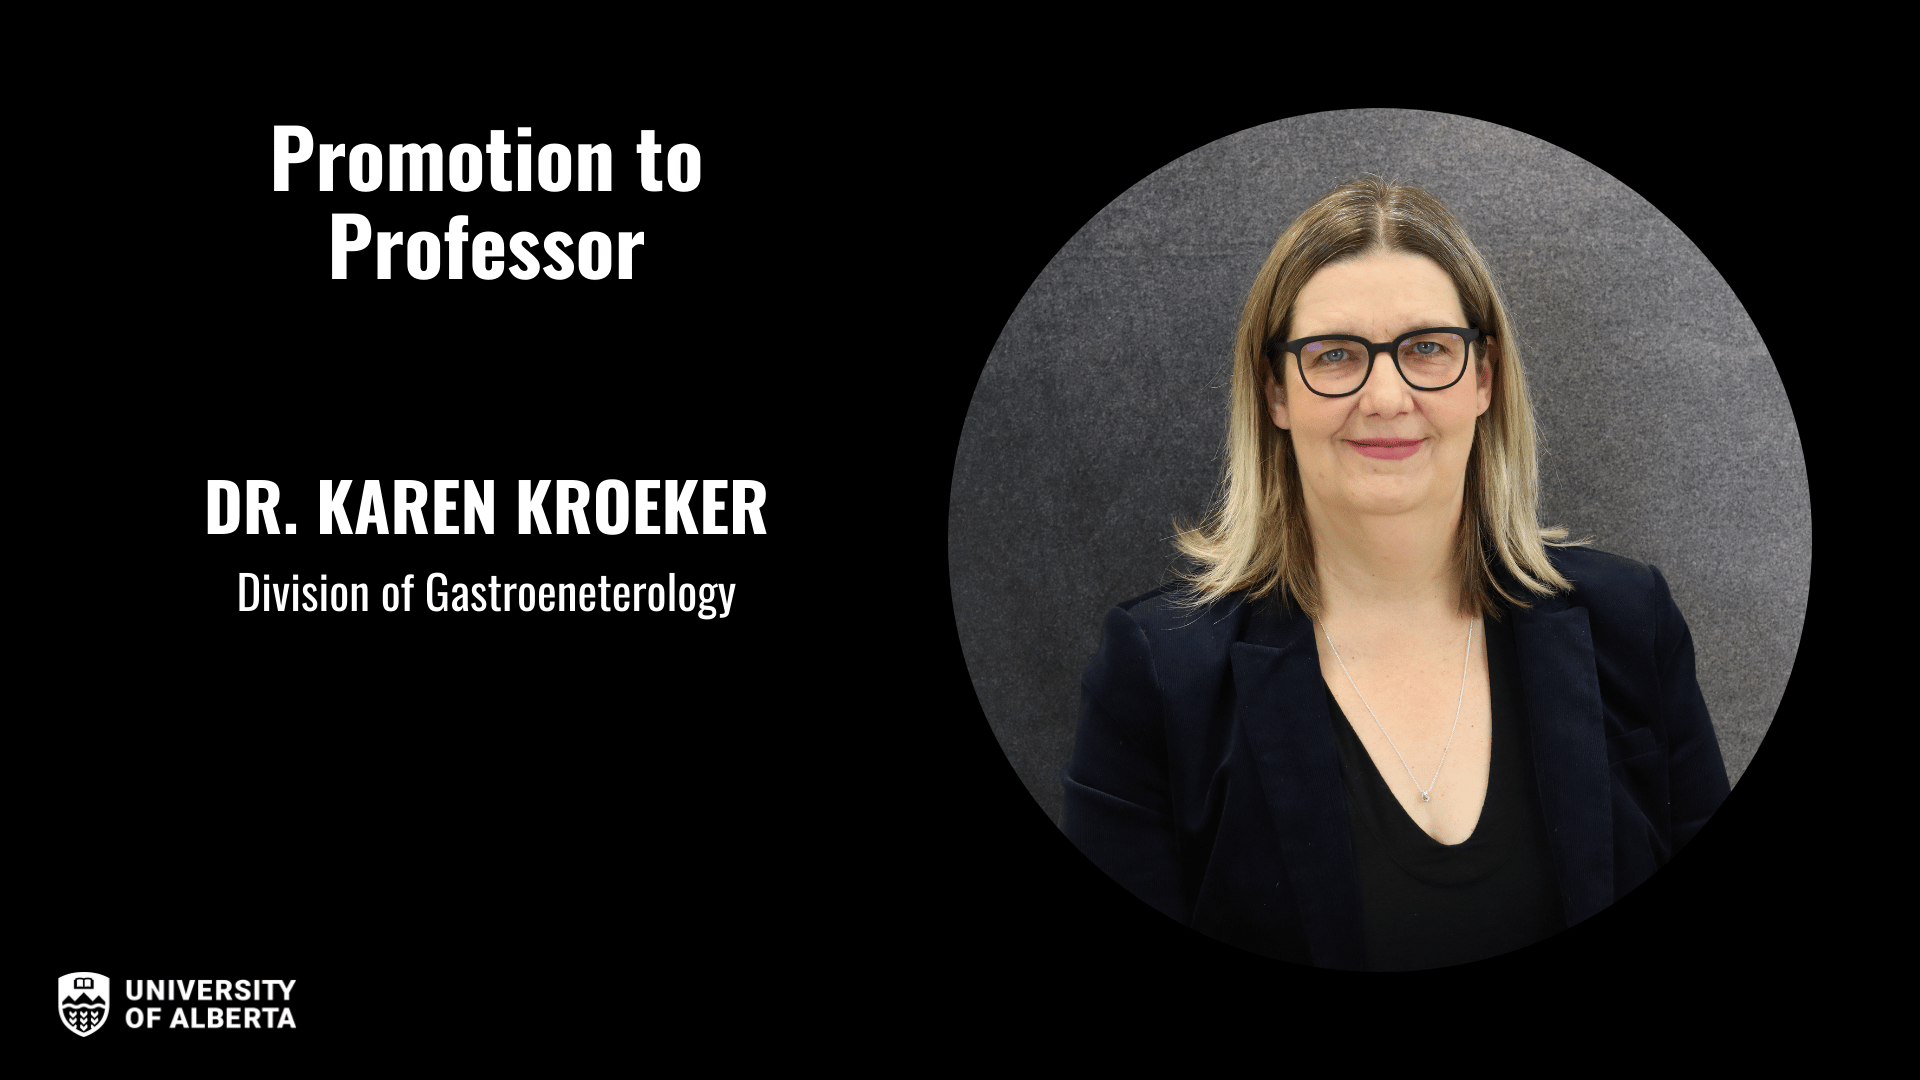 Dr. Karen Kroeker